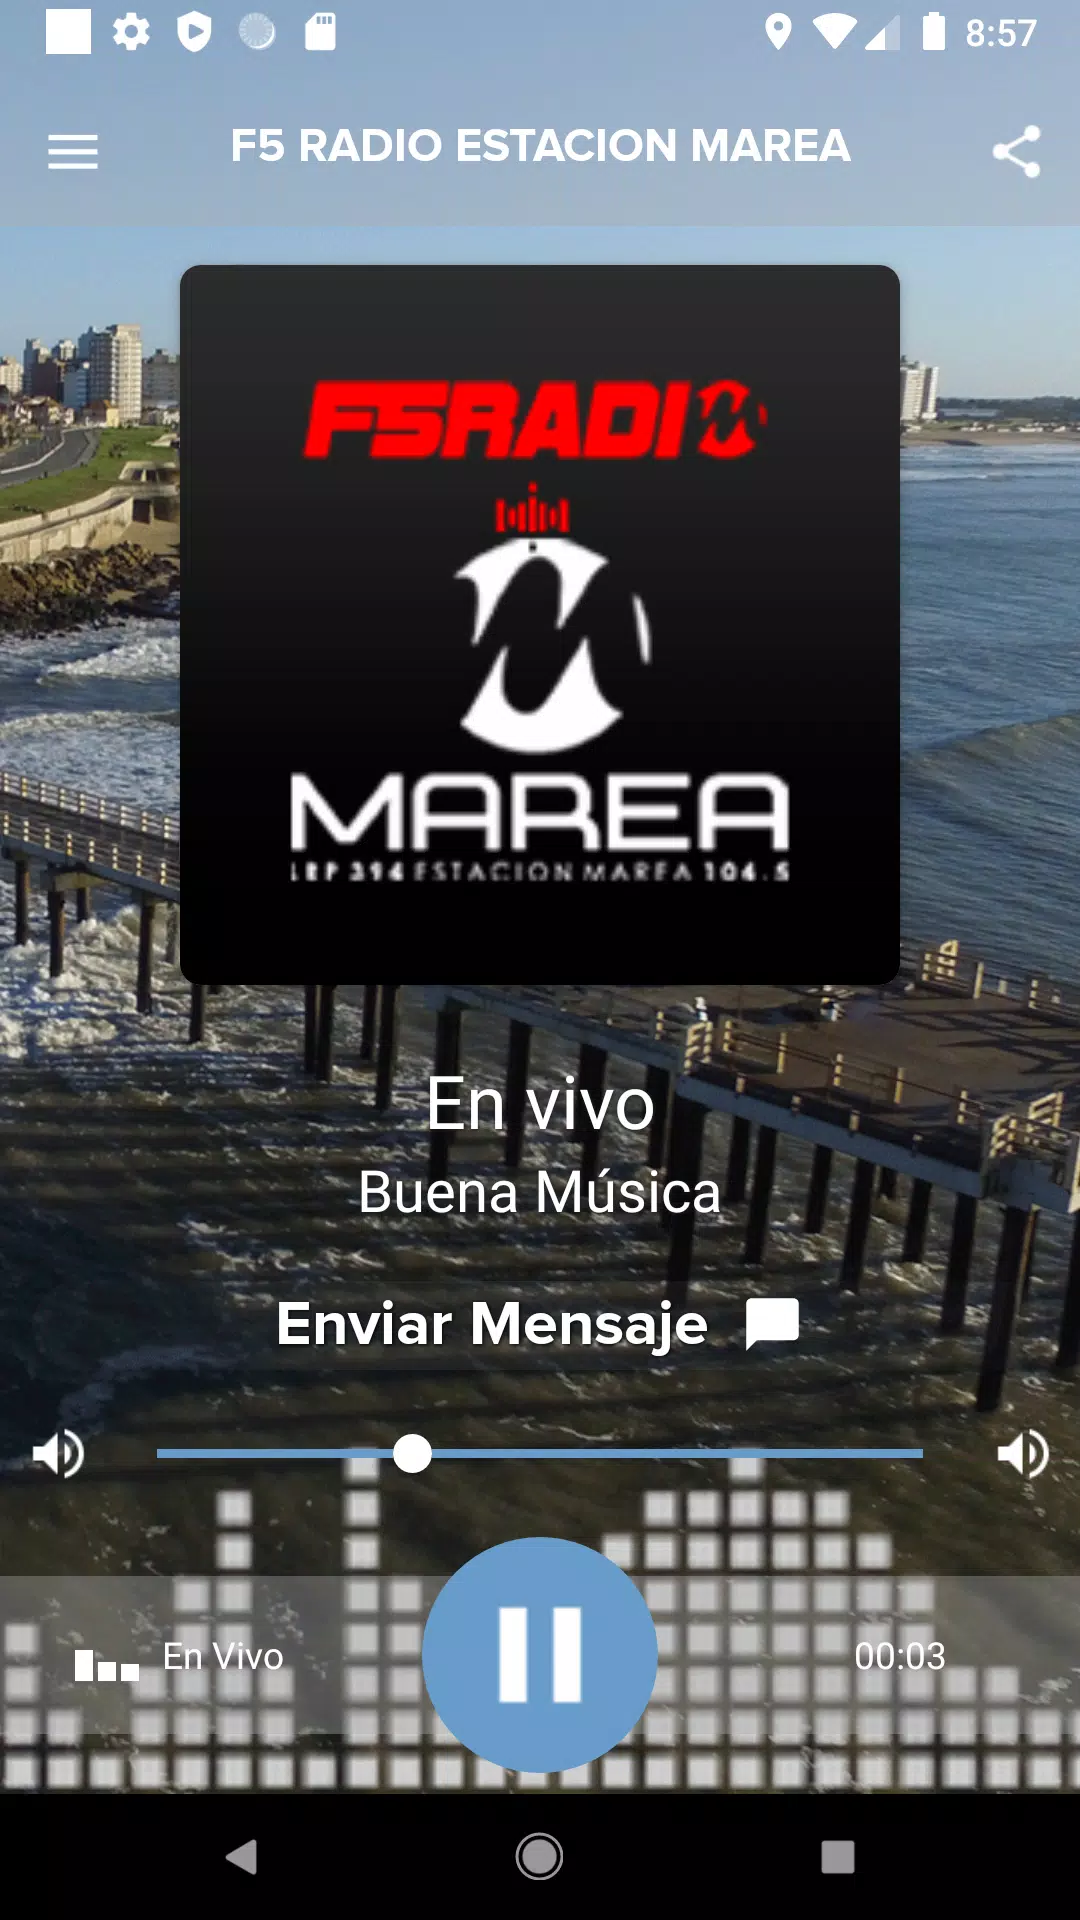 F5 RADIO ESTACION MAREA pour Android Télécharger